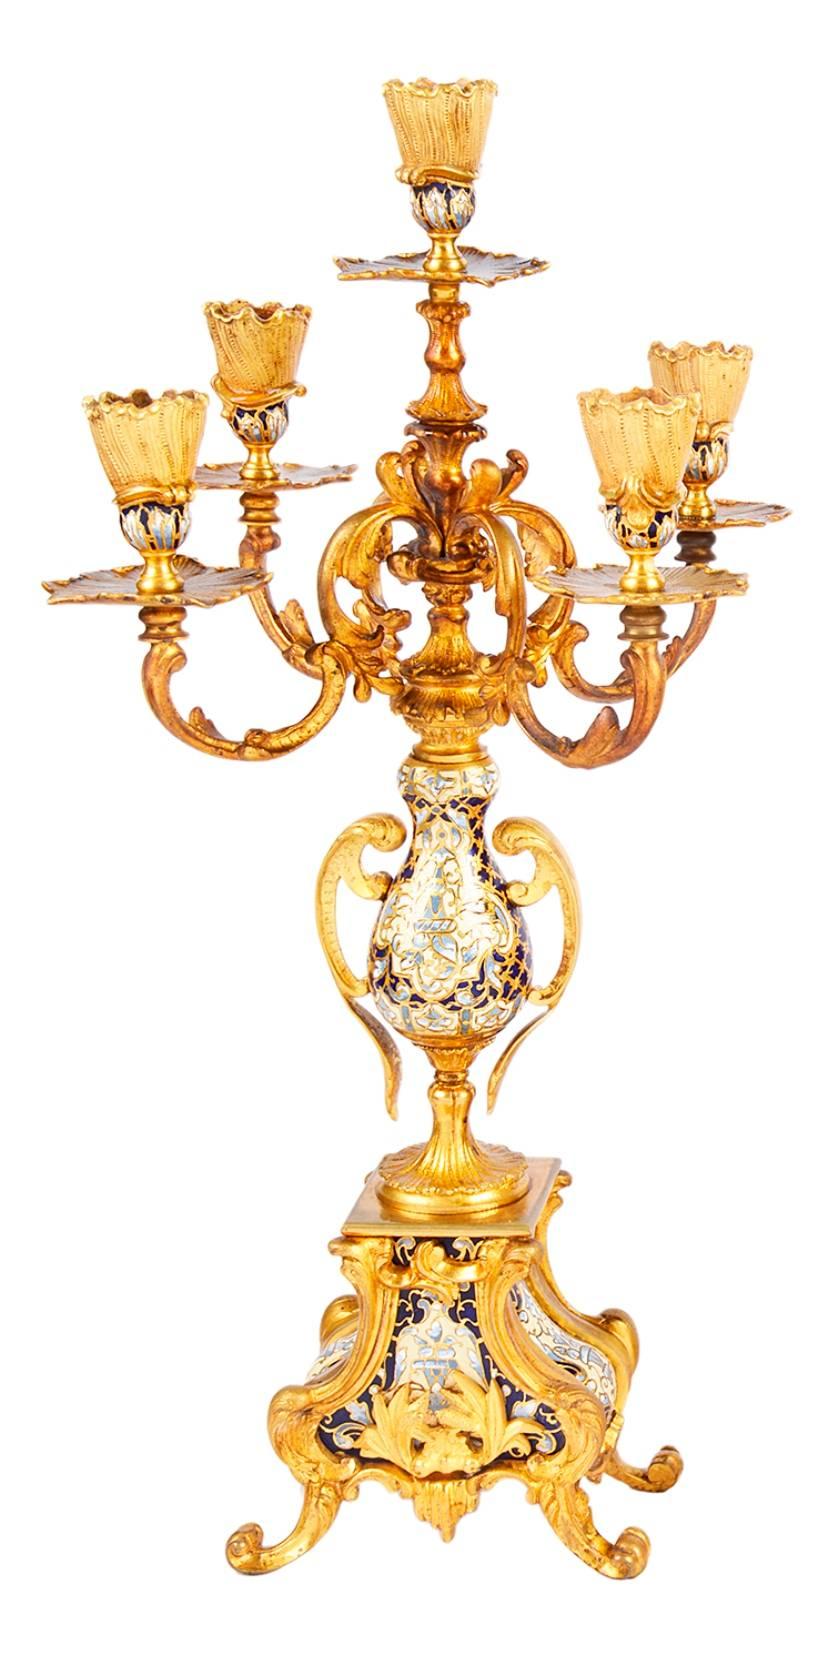 Garniture de pendule de très bonne qualité, datant du 19e siècle, en bronze doré et en émail champlevé. L'horloge est ornée d'un chérubin de chaque côté, d'une urne avec des guirlandes au sommet, d'un rouleau 